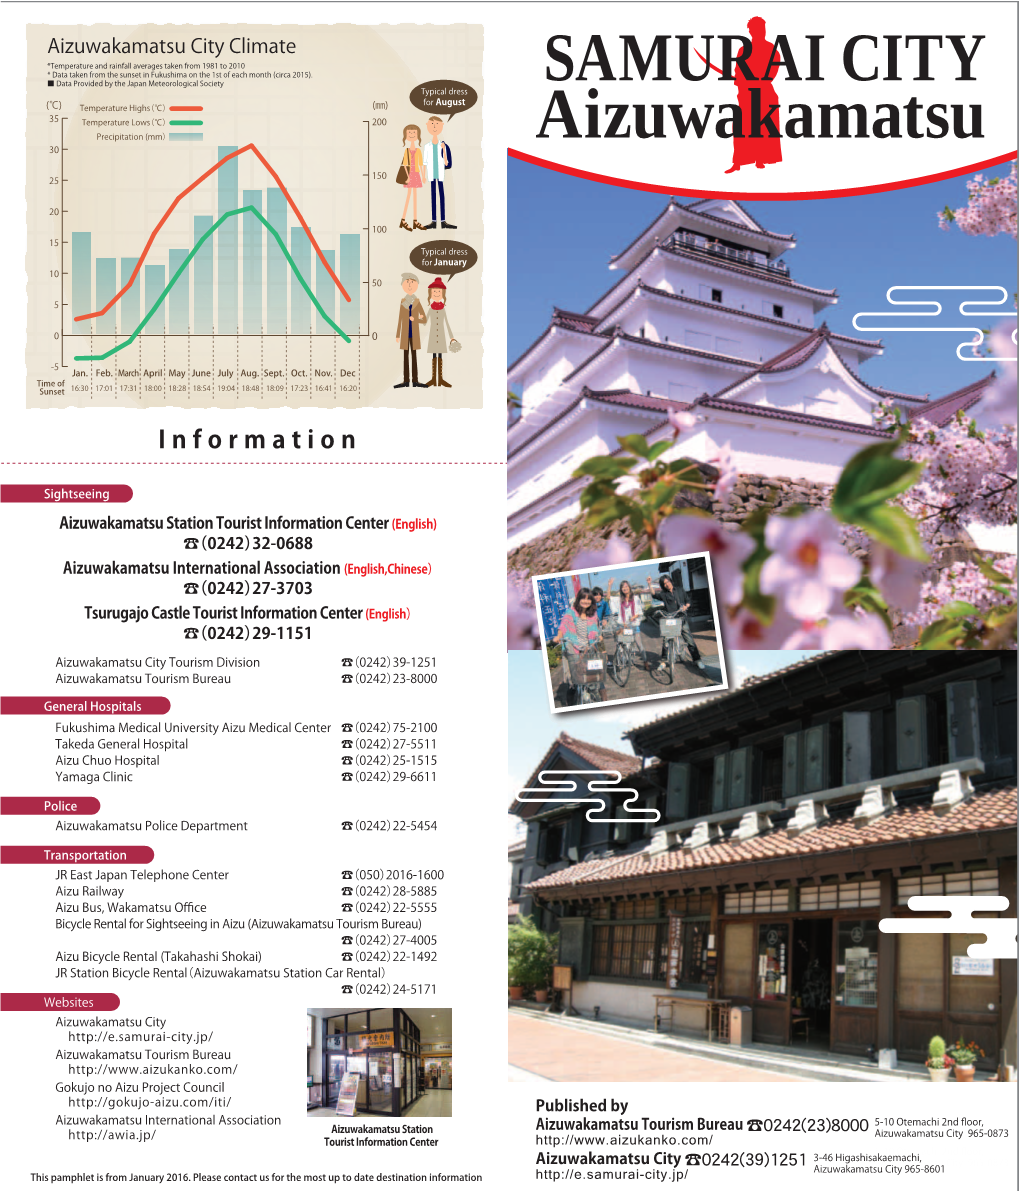 Samurai City Aizuwakamatsu